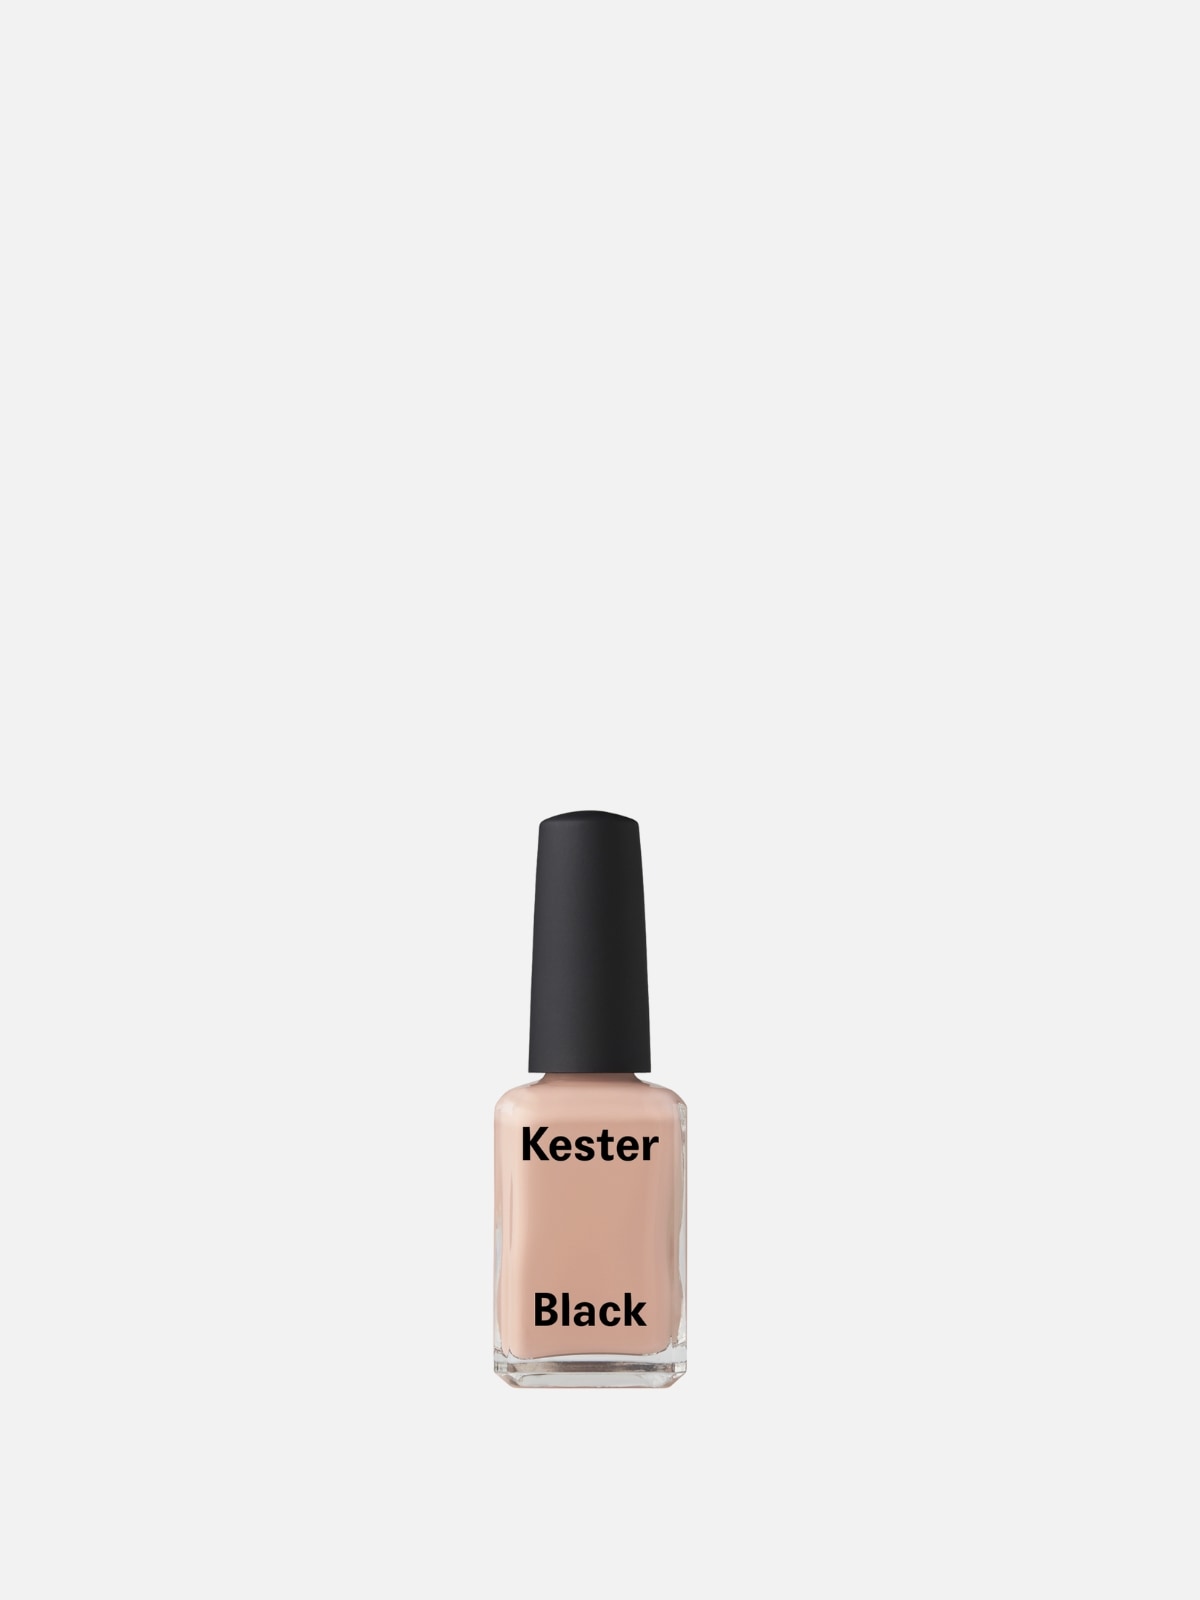 Kester Black - In the Buff - Smalto color nudo rosato